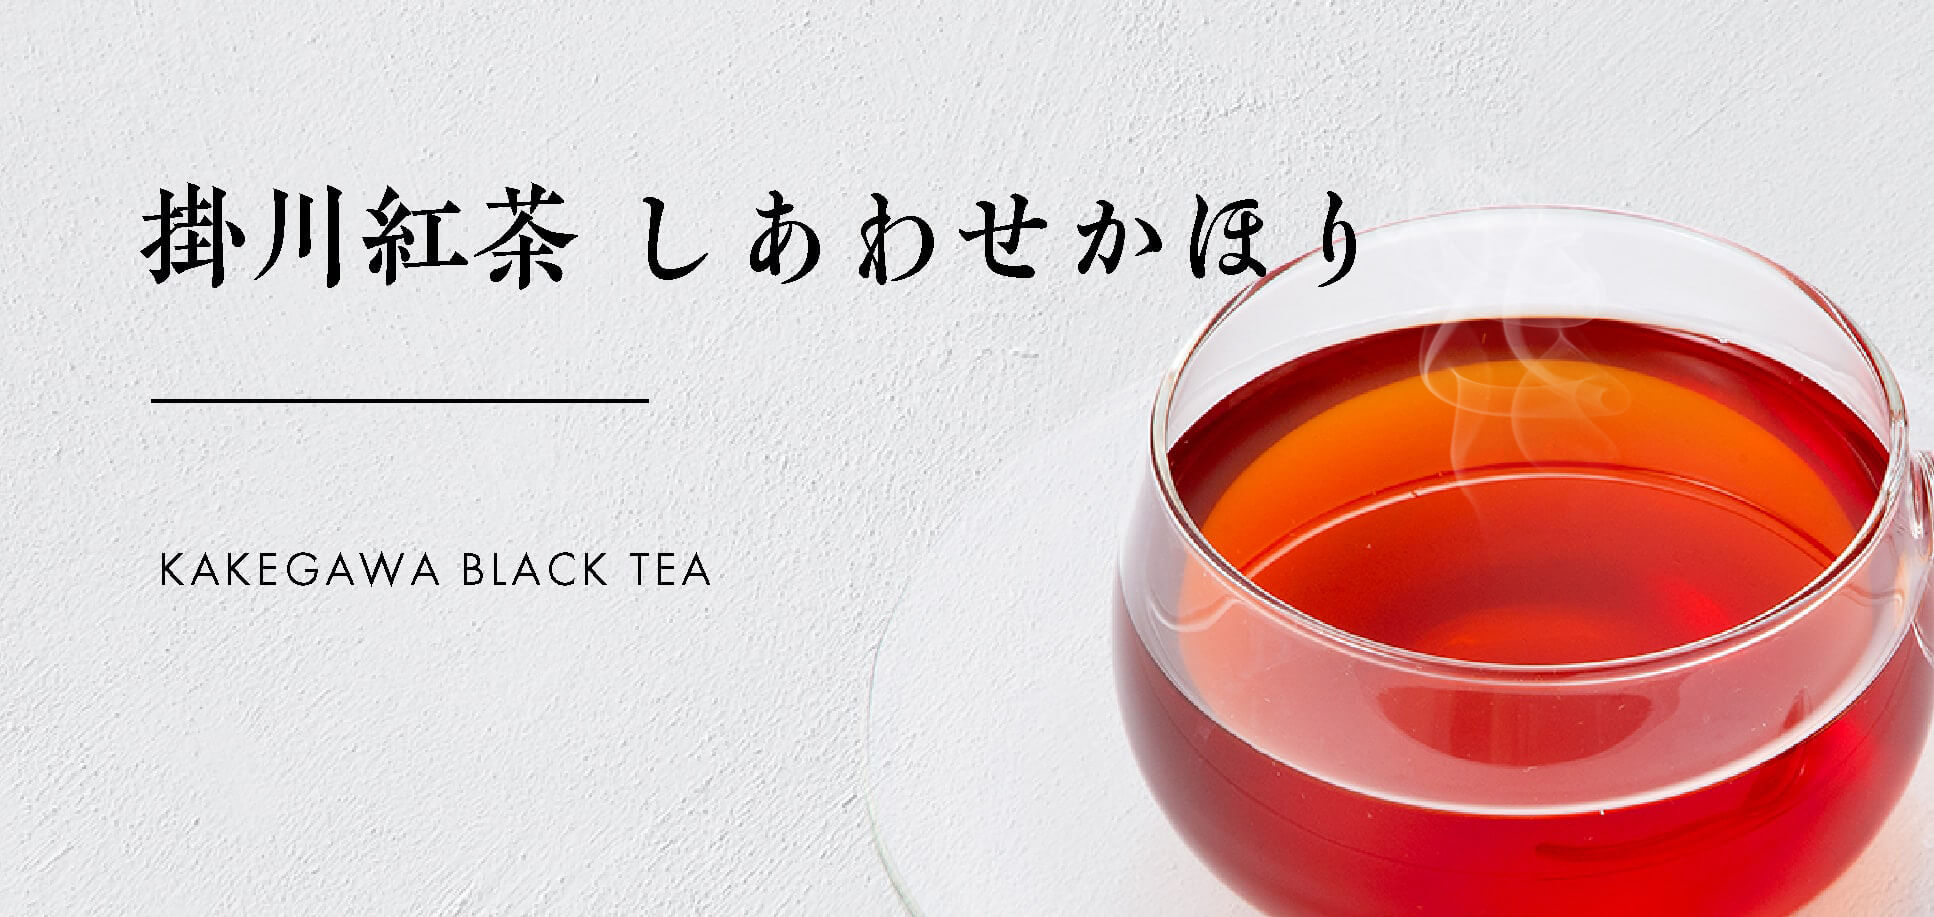 【かねじょう・茶の庭】掛川紅茶 しあわせかほり ティーバッグ・リーフタイプ